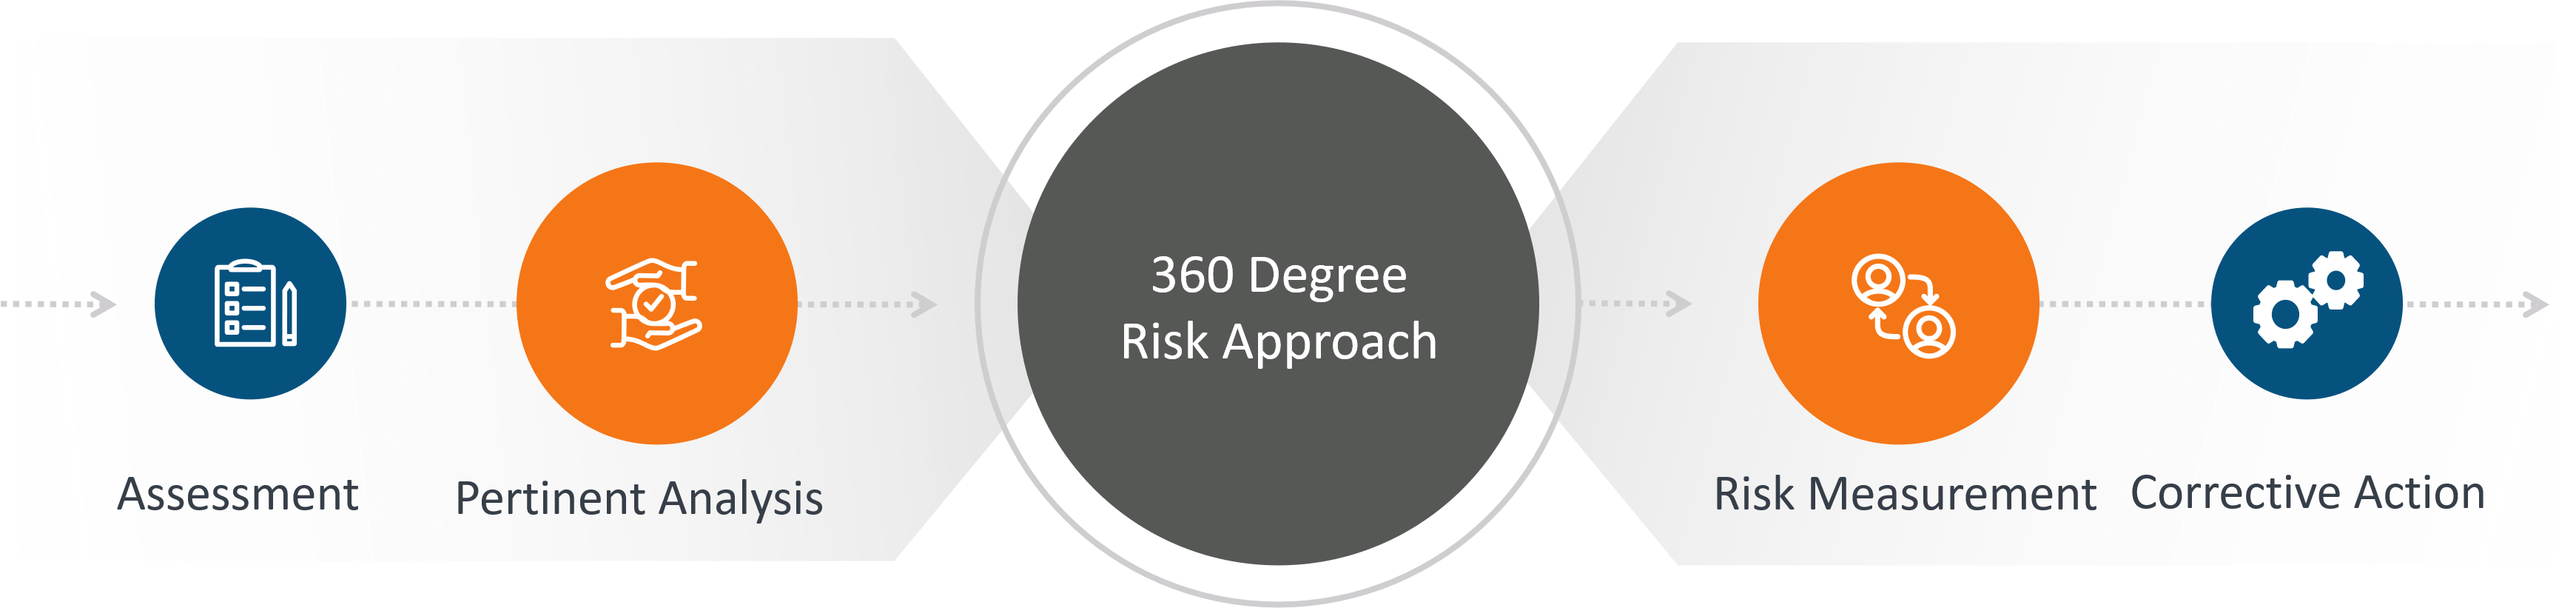 Shieldrisk - Vendor Risk 360 Degree View